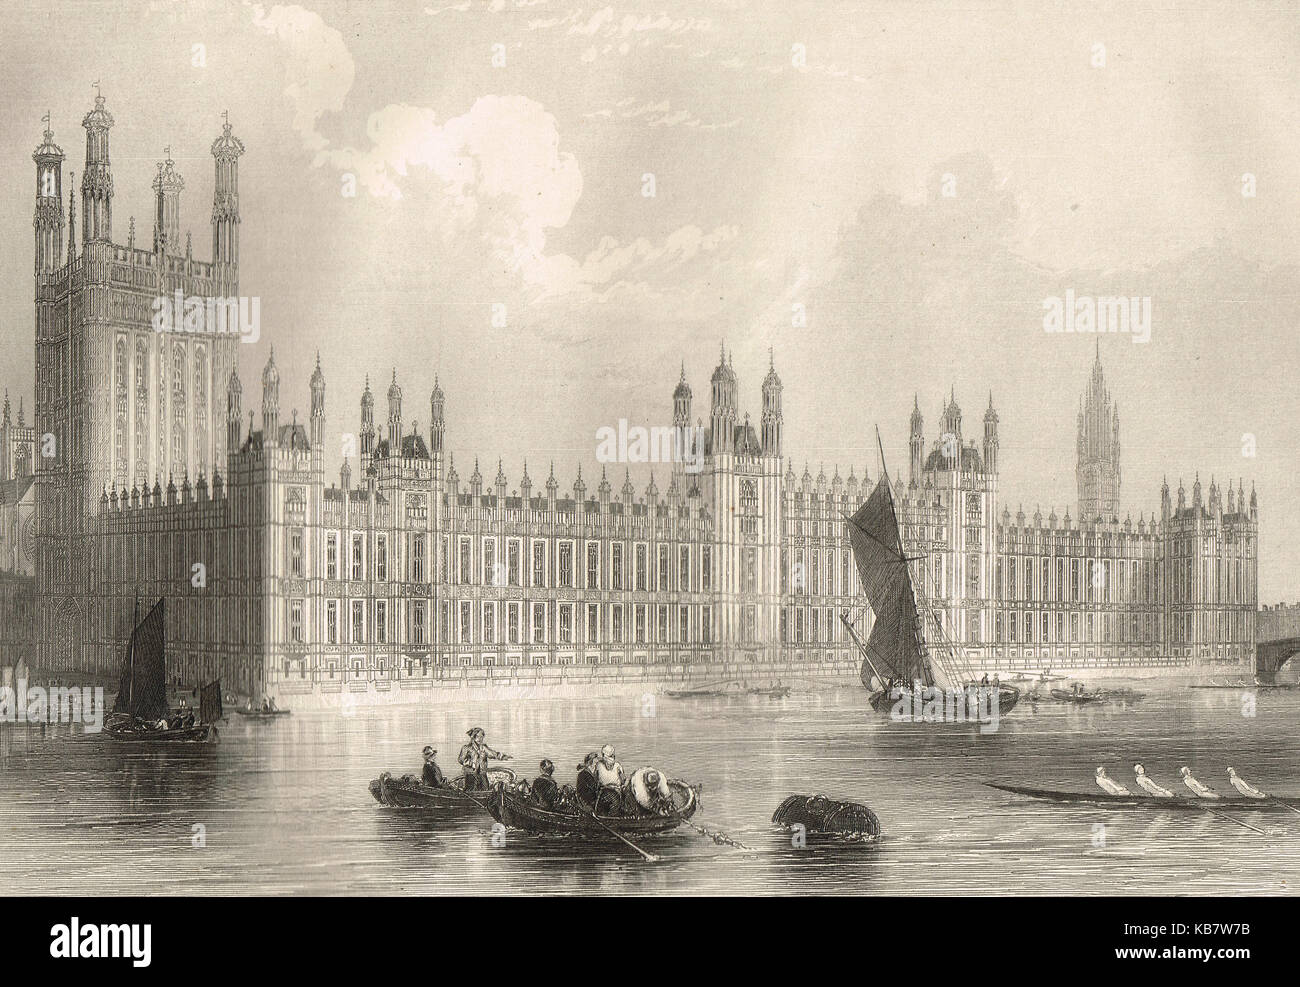 Les nouvelles chambres du Parlement, une vue du 19ème siècle Banque D'Images